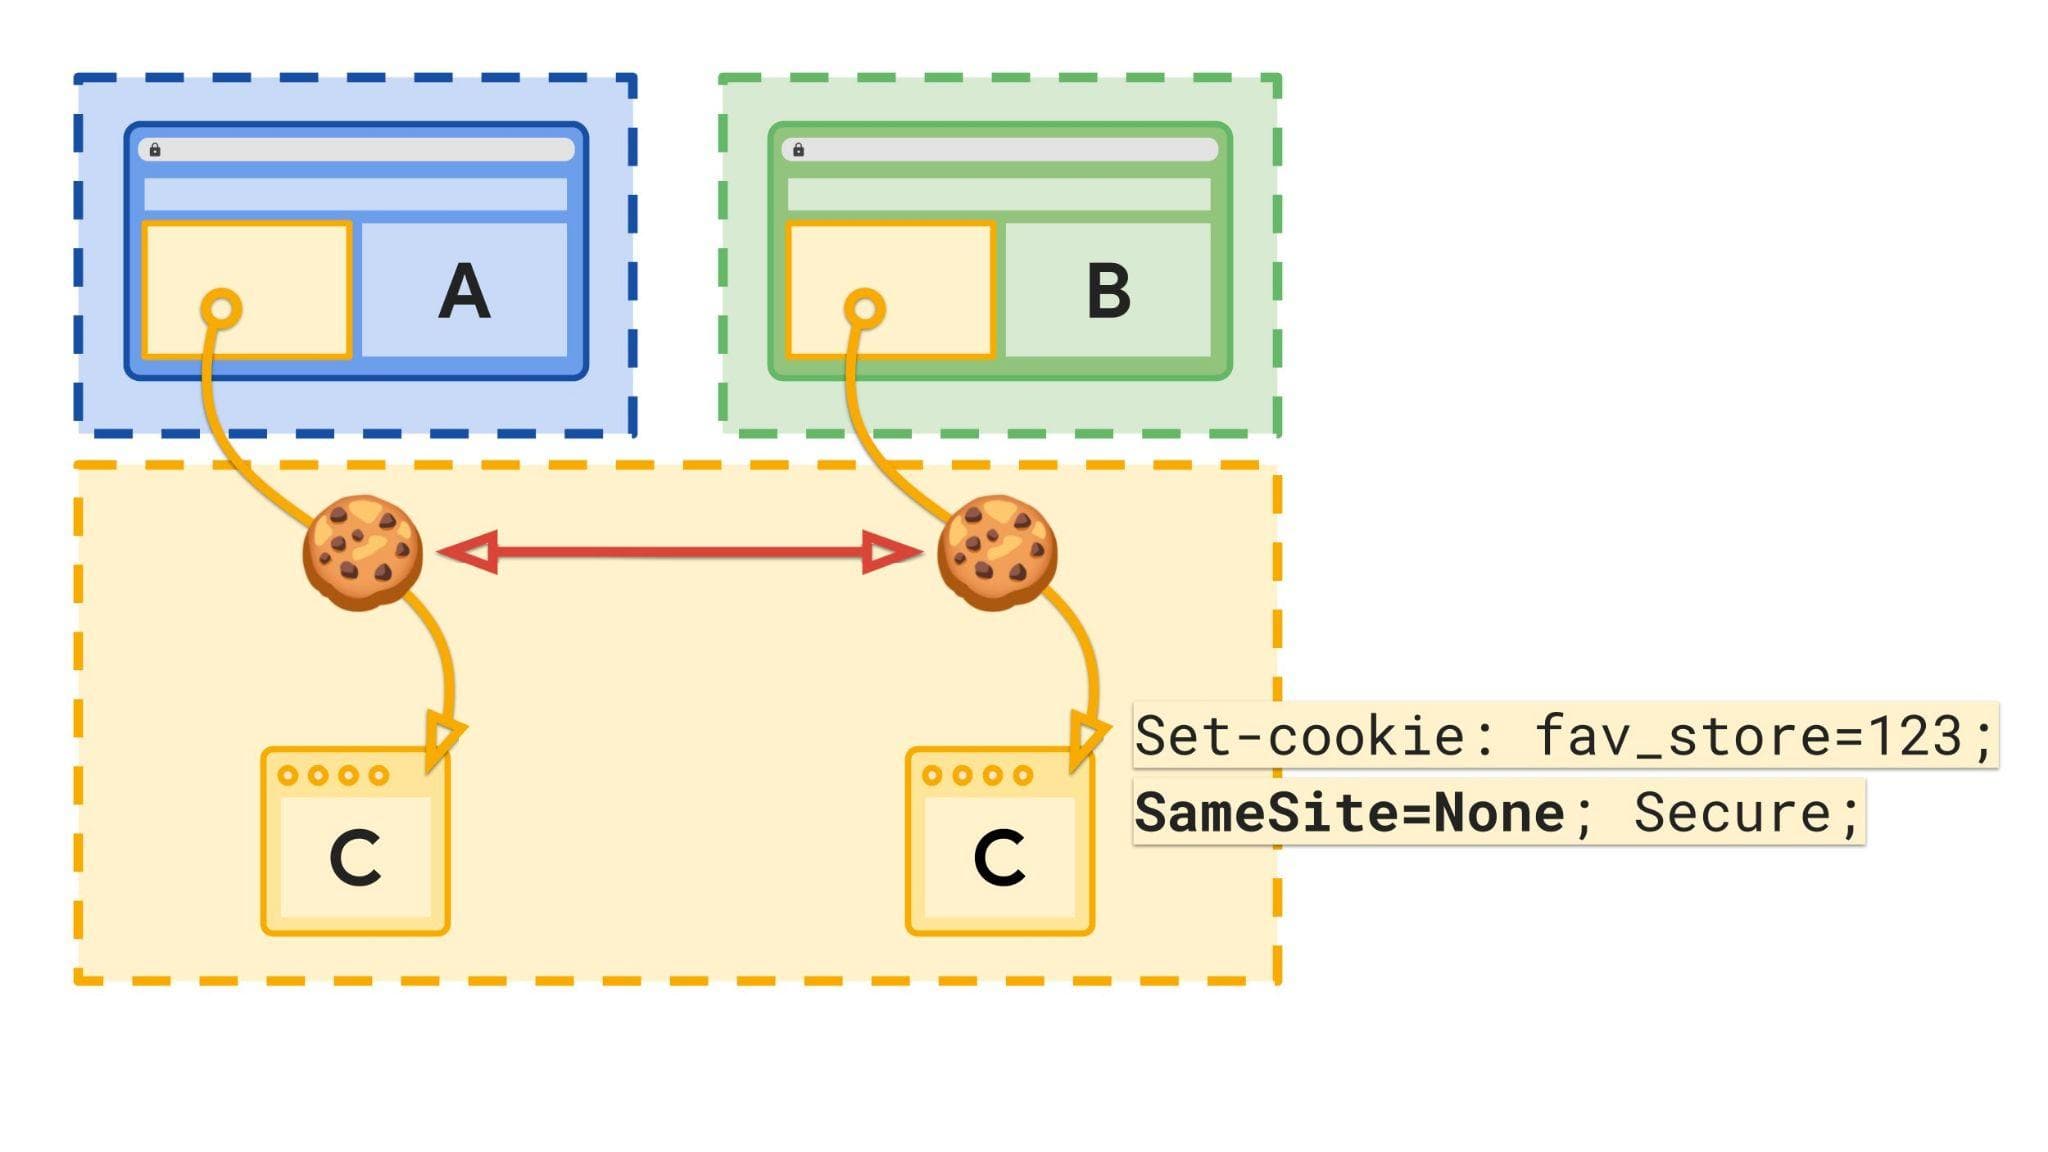 डायग्राम में उन साइटों और स्टोरेज की जानकारी दी गई है जिनमें अलग-अलग कुकी मौजूद हैं.